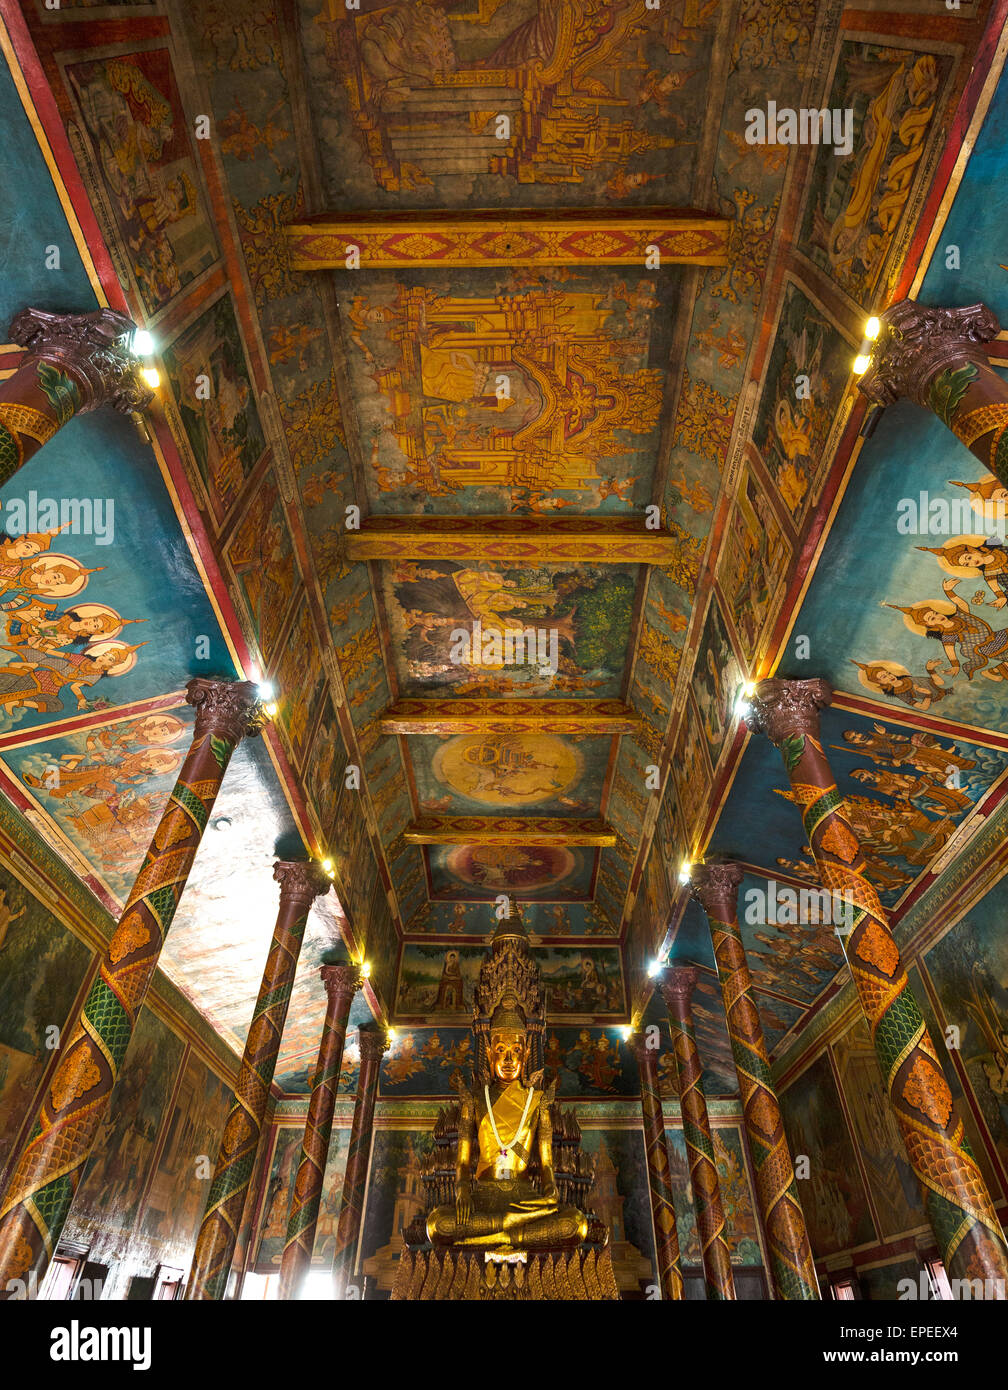 Statue de bronze et des peintures au plafond, statue de Bouddha dans le temple Phnom Penh, Cambodge Banque D'Images